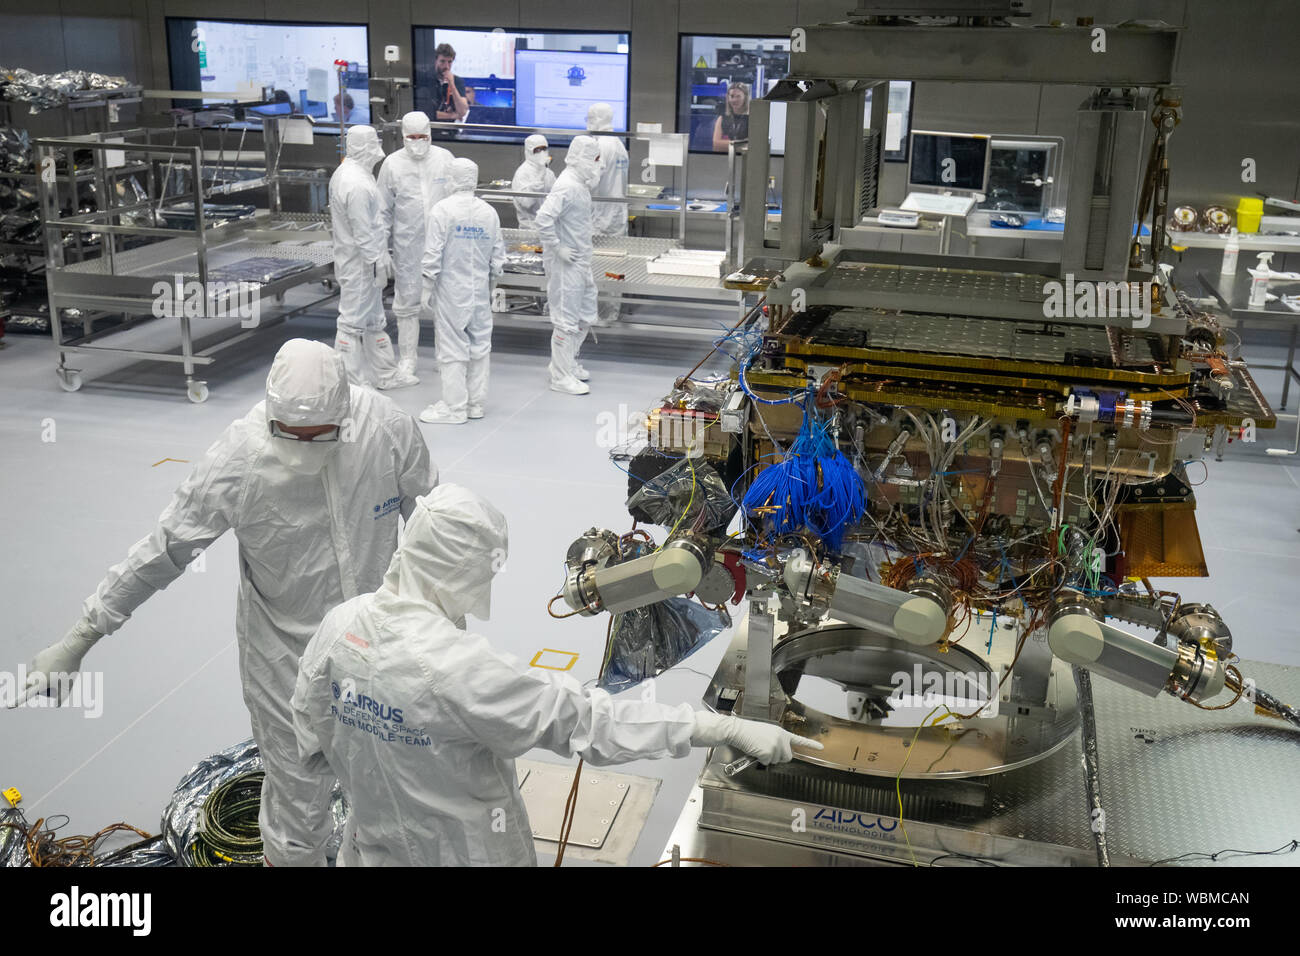 ExoMars rover dell'Agenzia spaziale europea è pronta a lasciare Airbus a Stevenage. La ExoMars 2020 rover Rosalind Franklin è la prima rover planetaria d'Europa che cercherà i segni della vita passata o presente su Marte. Foto Stock